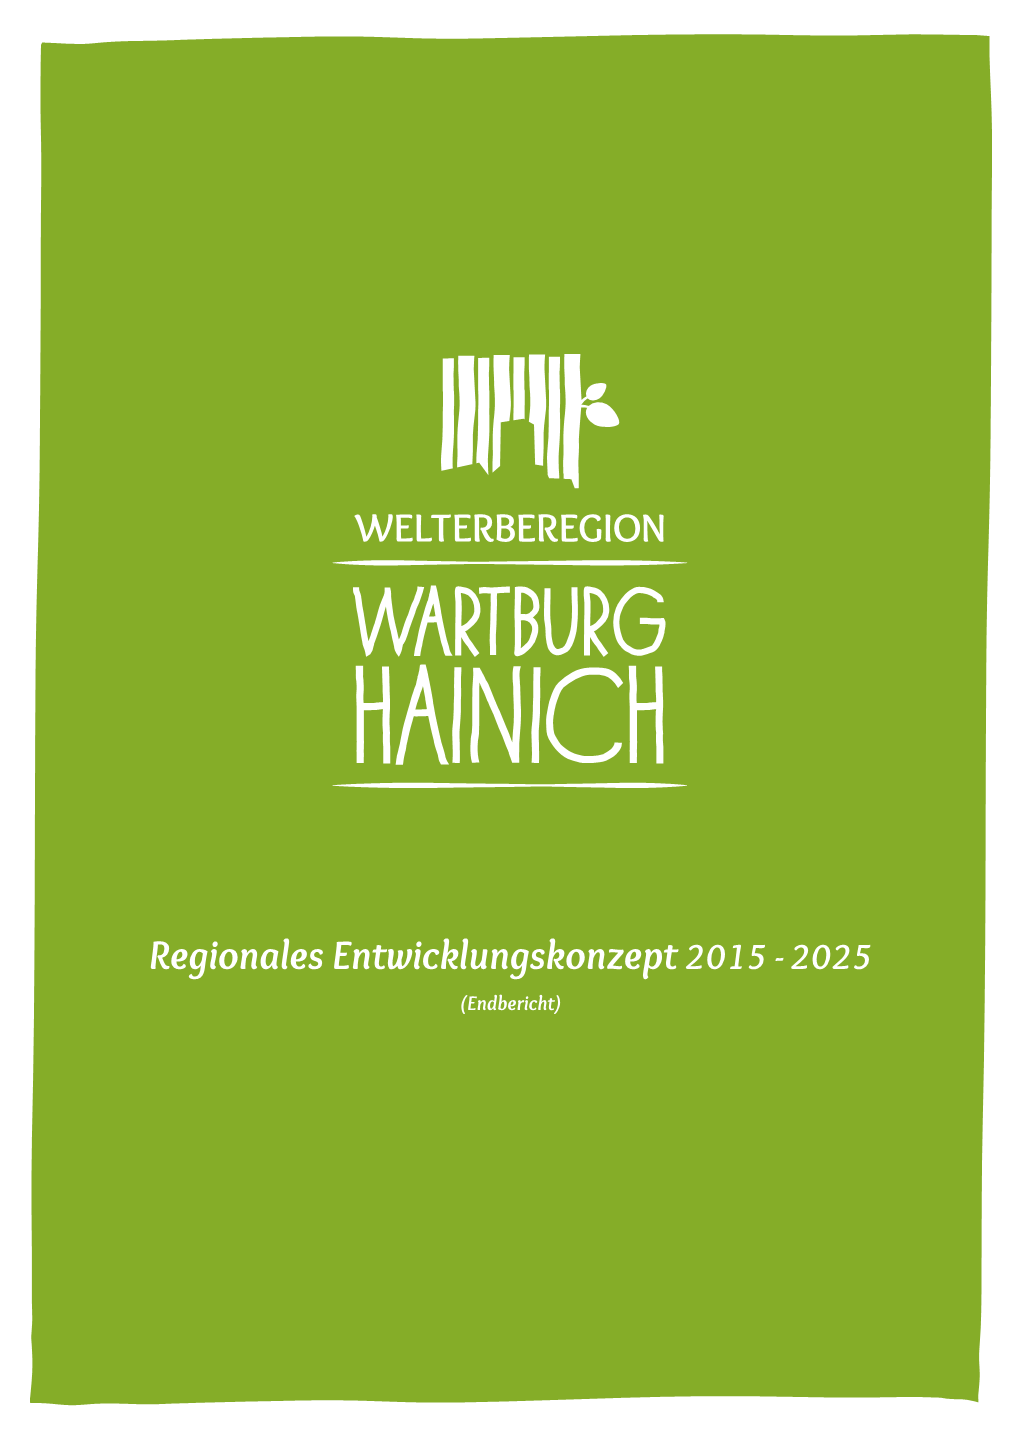 Endbericht REK Welterberegion Wartburg Hainich